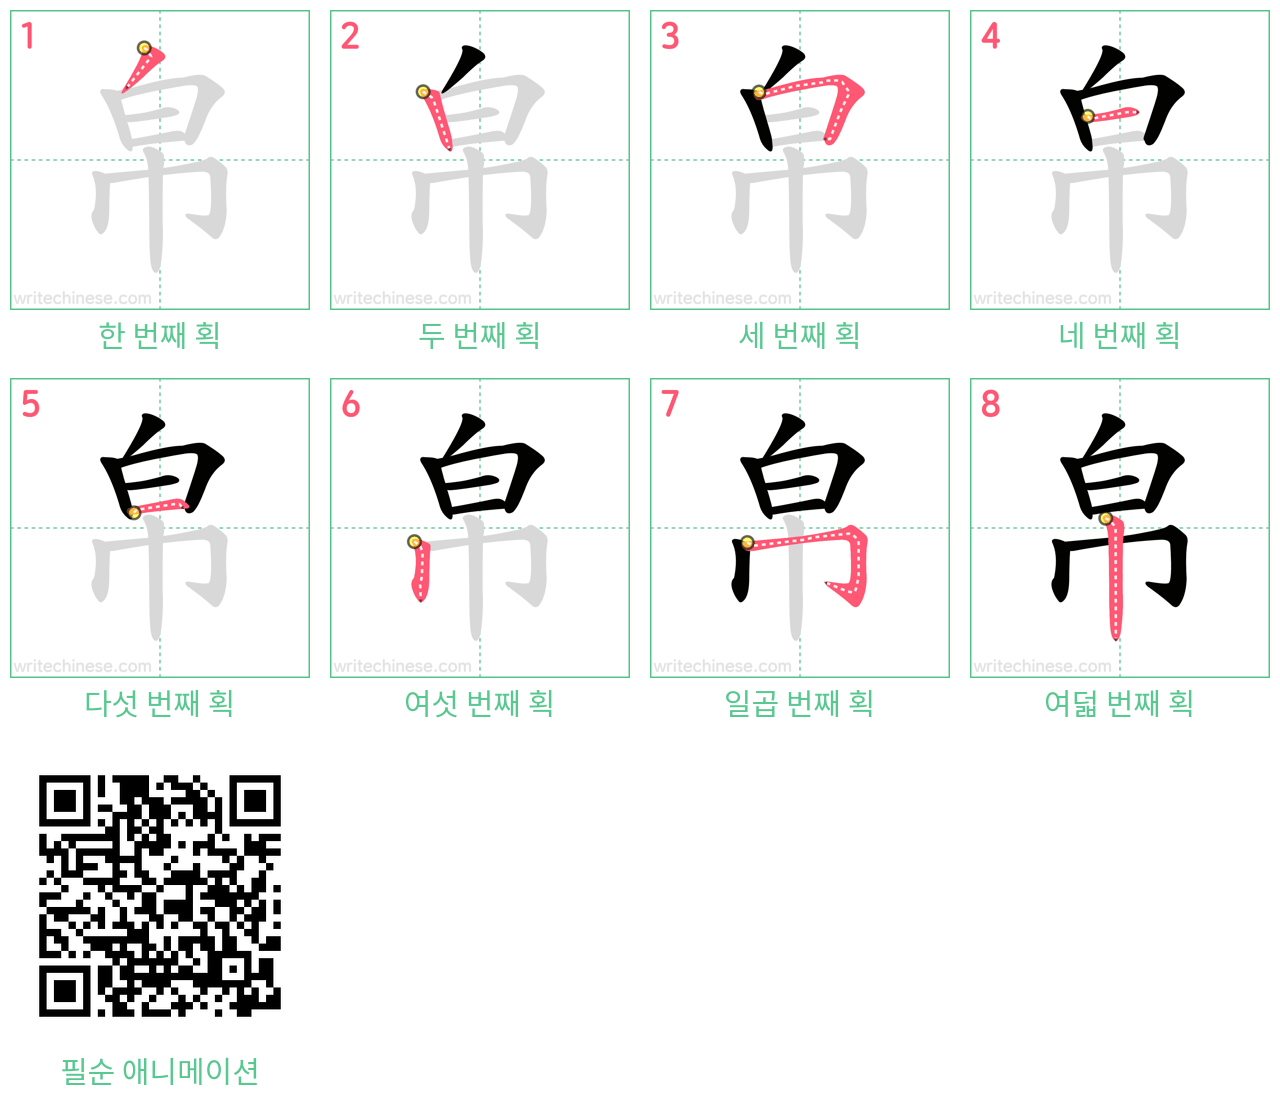 帛 step-by-step stroke order diagrams